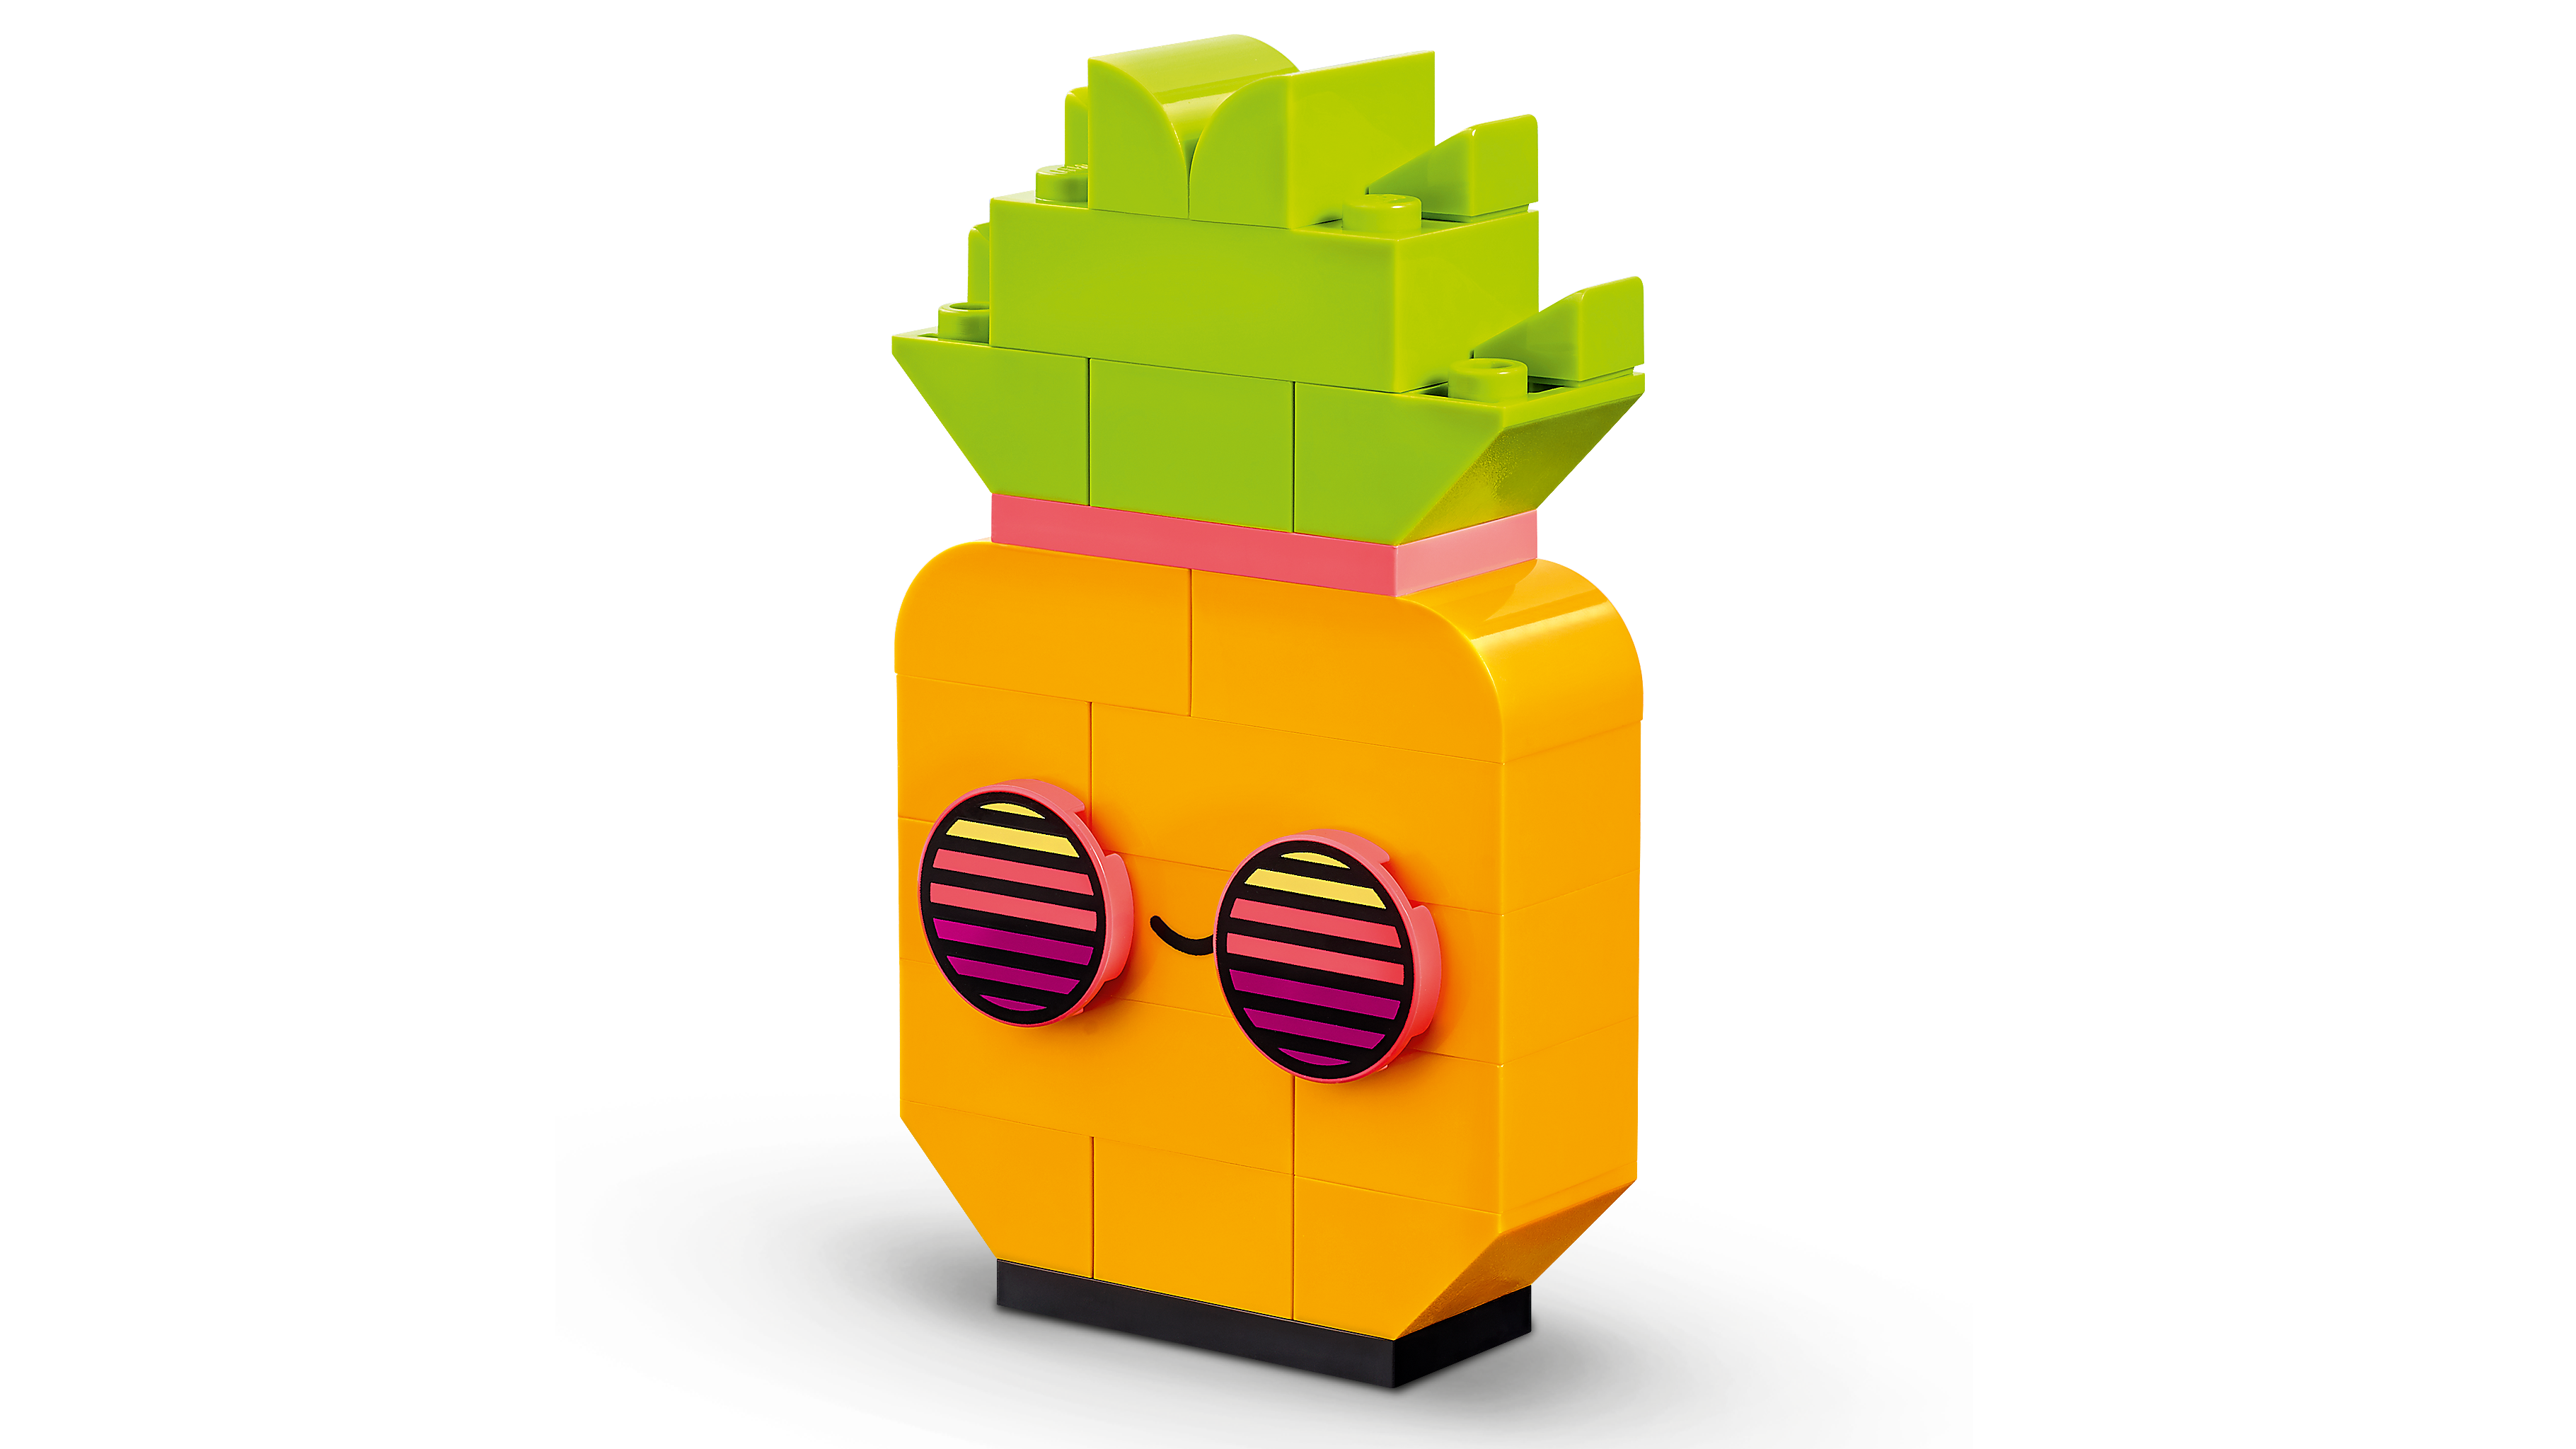 LEGO Classic Divertimento Creativo Neon